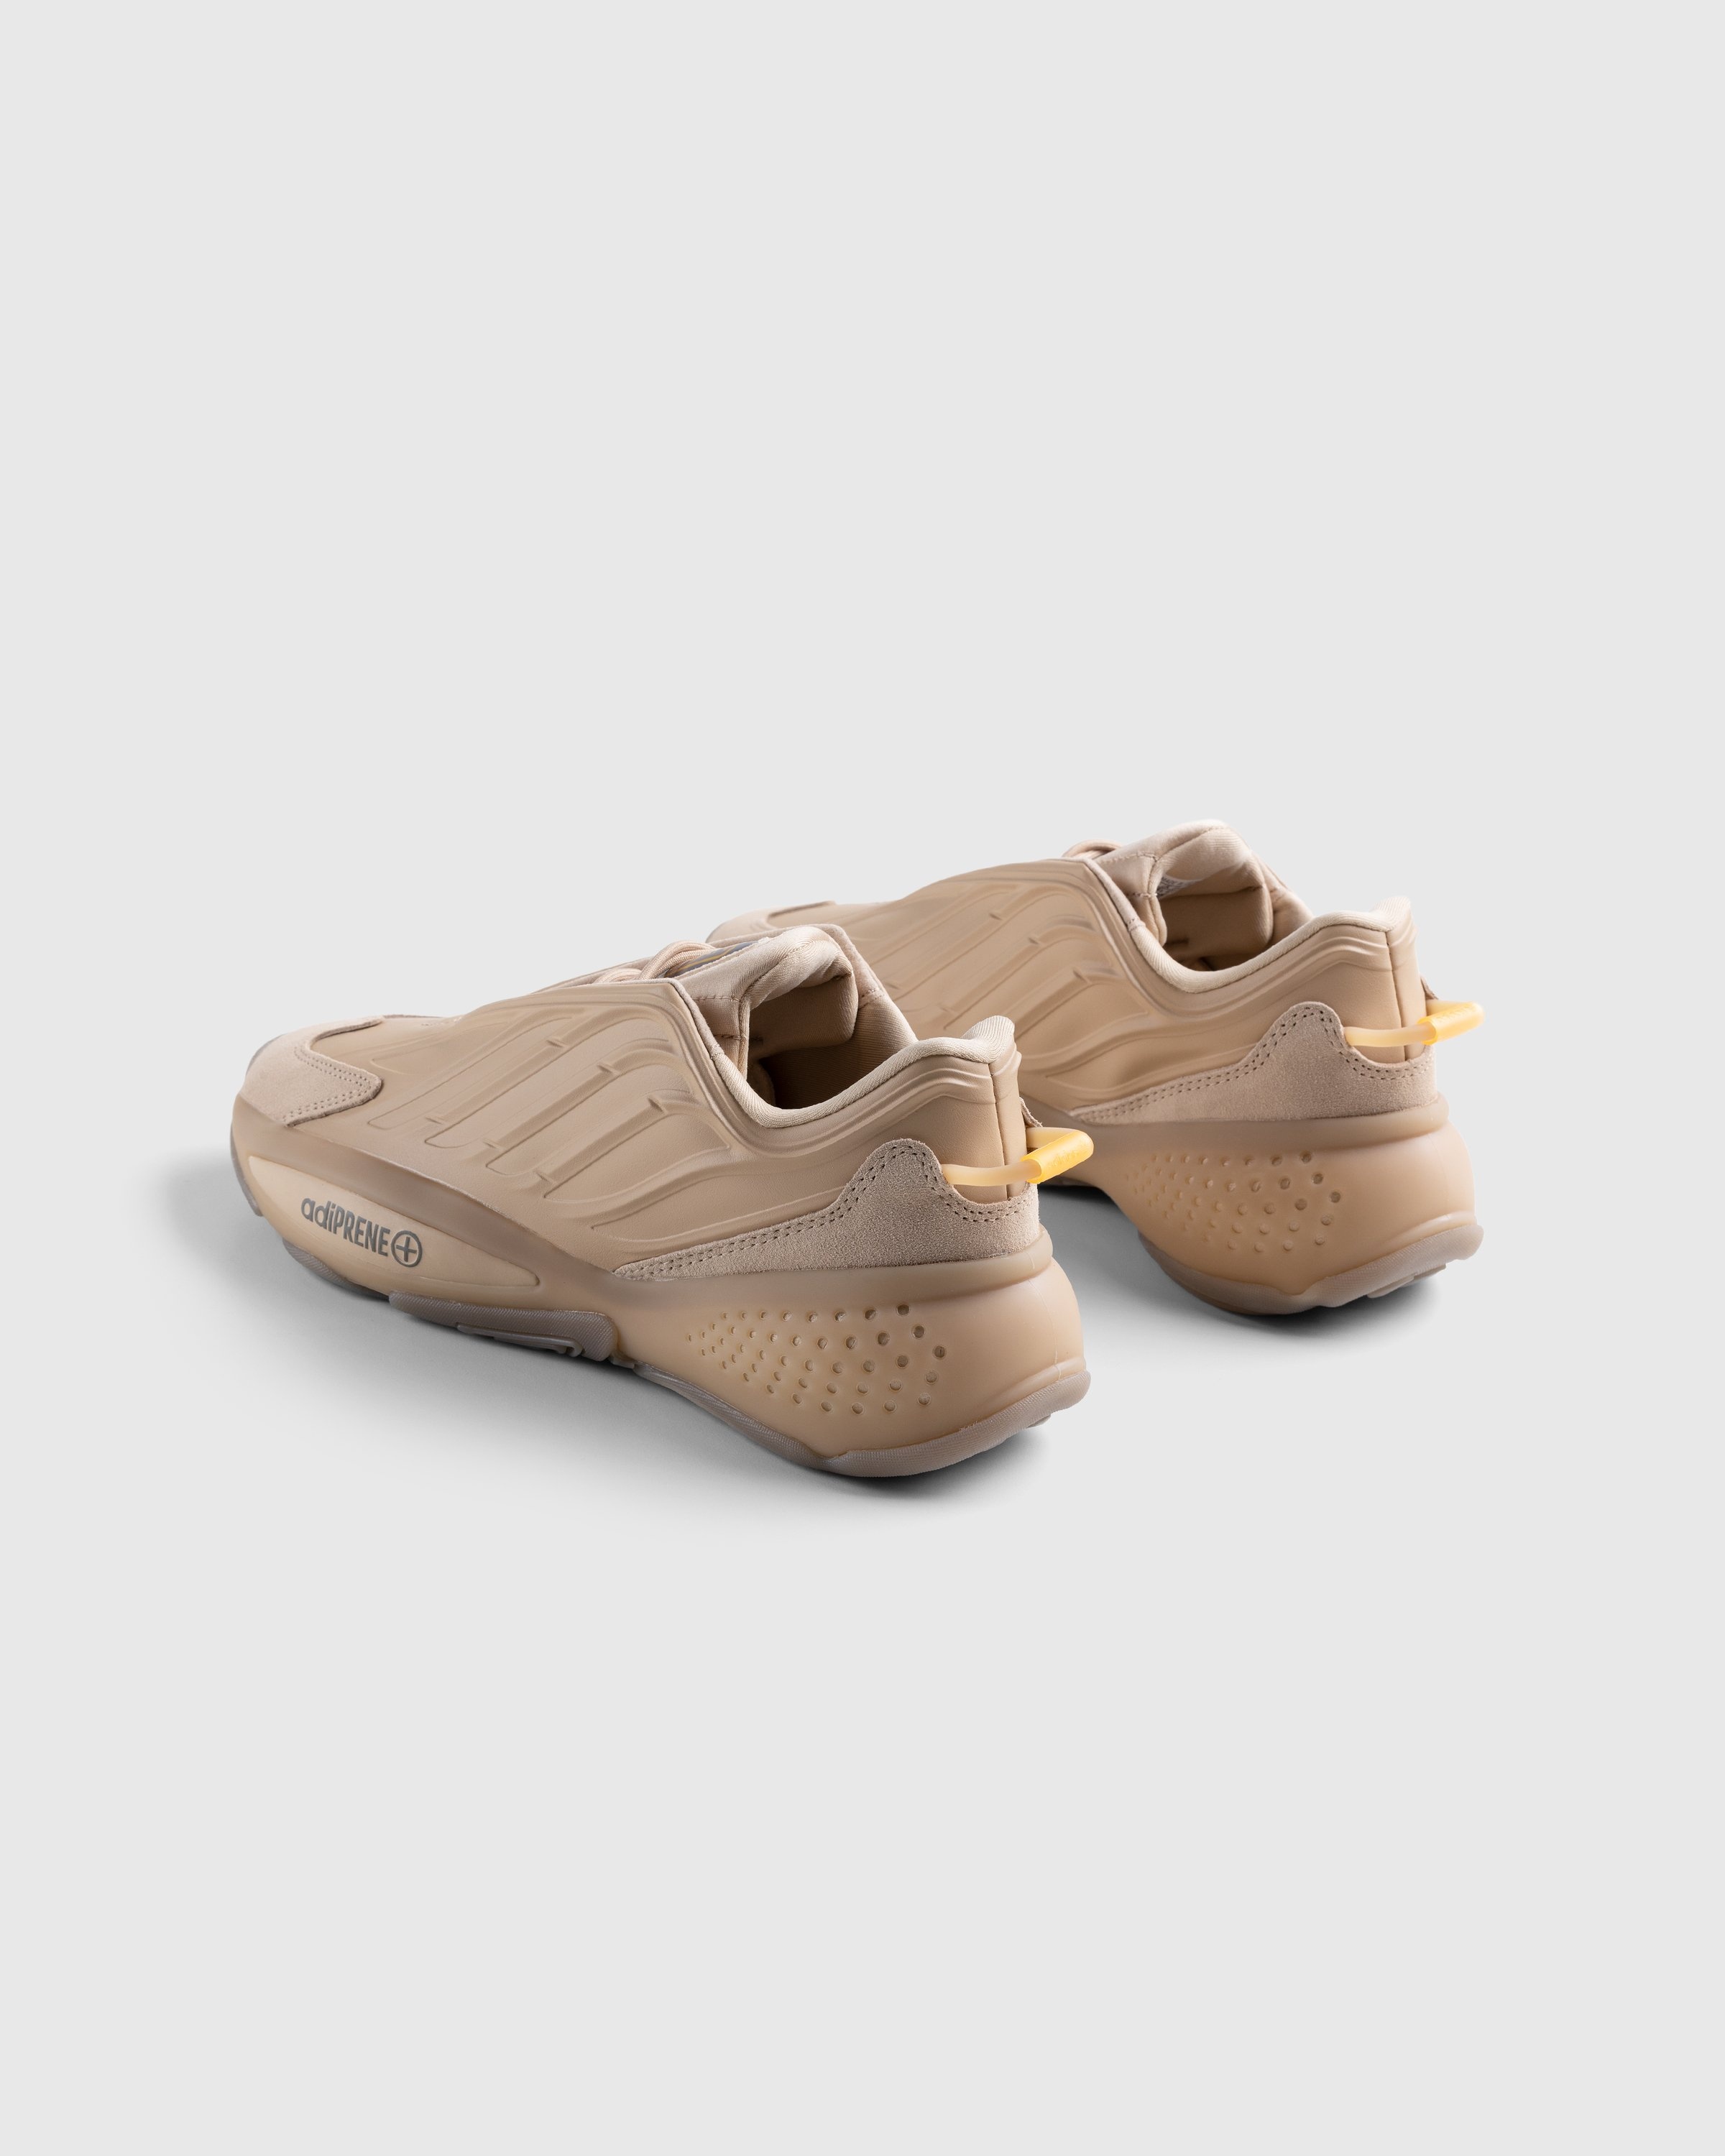 Adidas – Ozrah Pale Nude/Orange Rush - Low Top Sneakers - Brown - Image 4